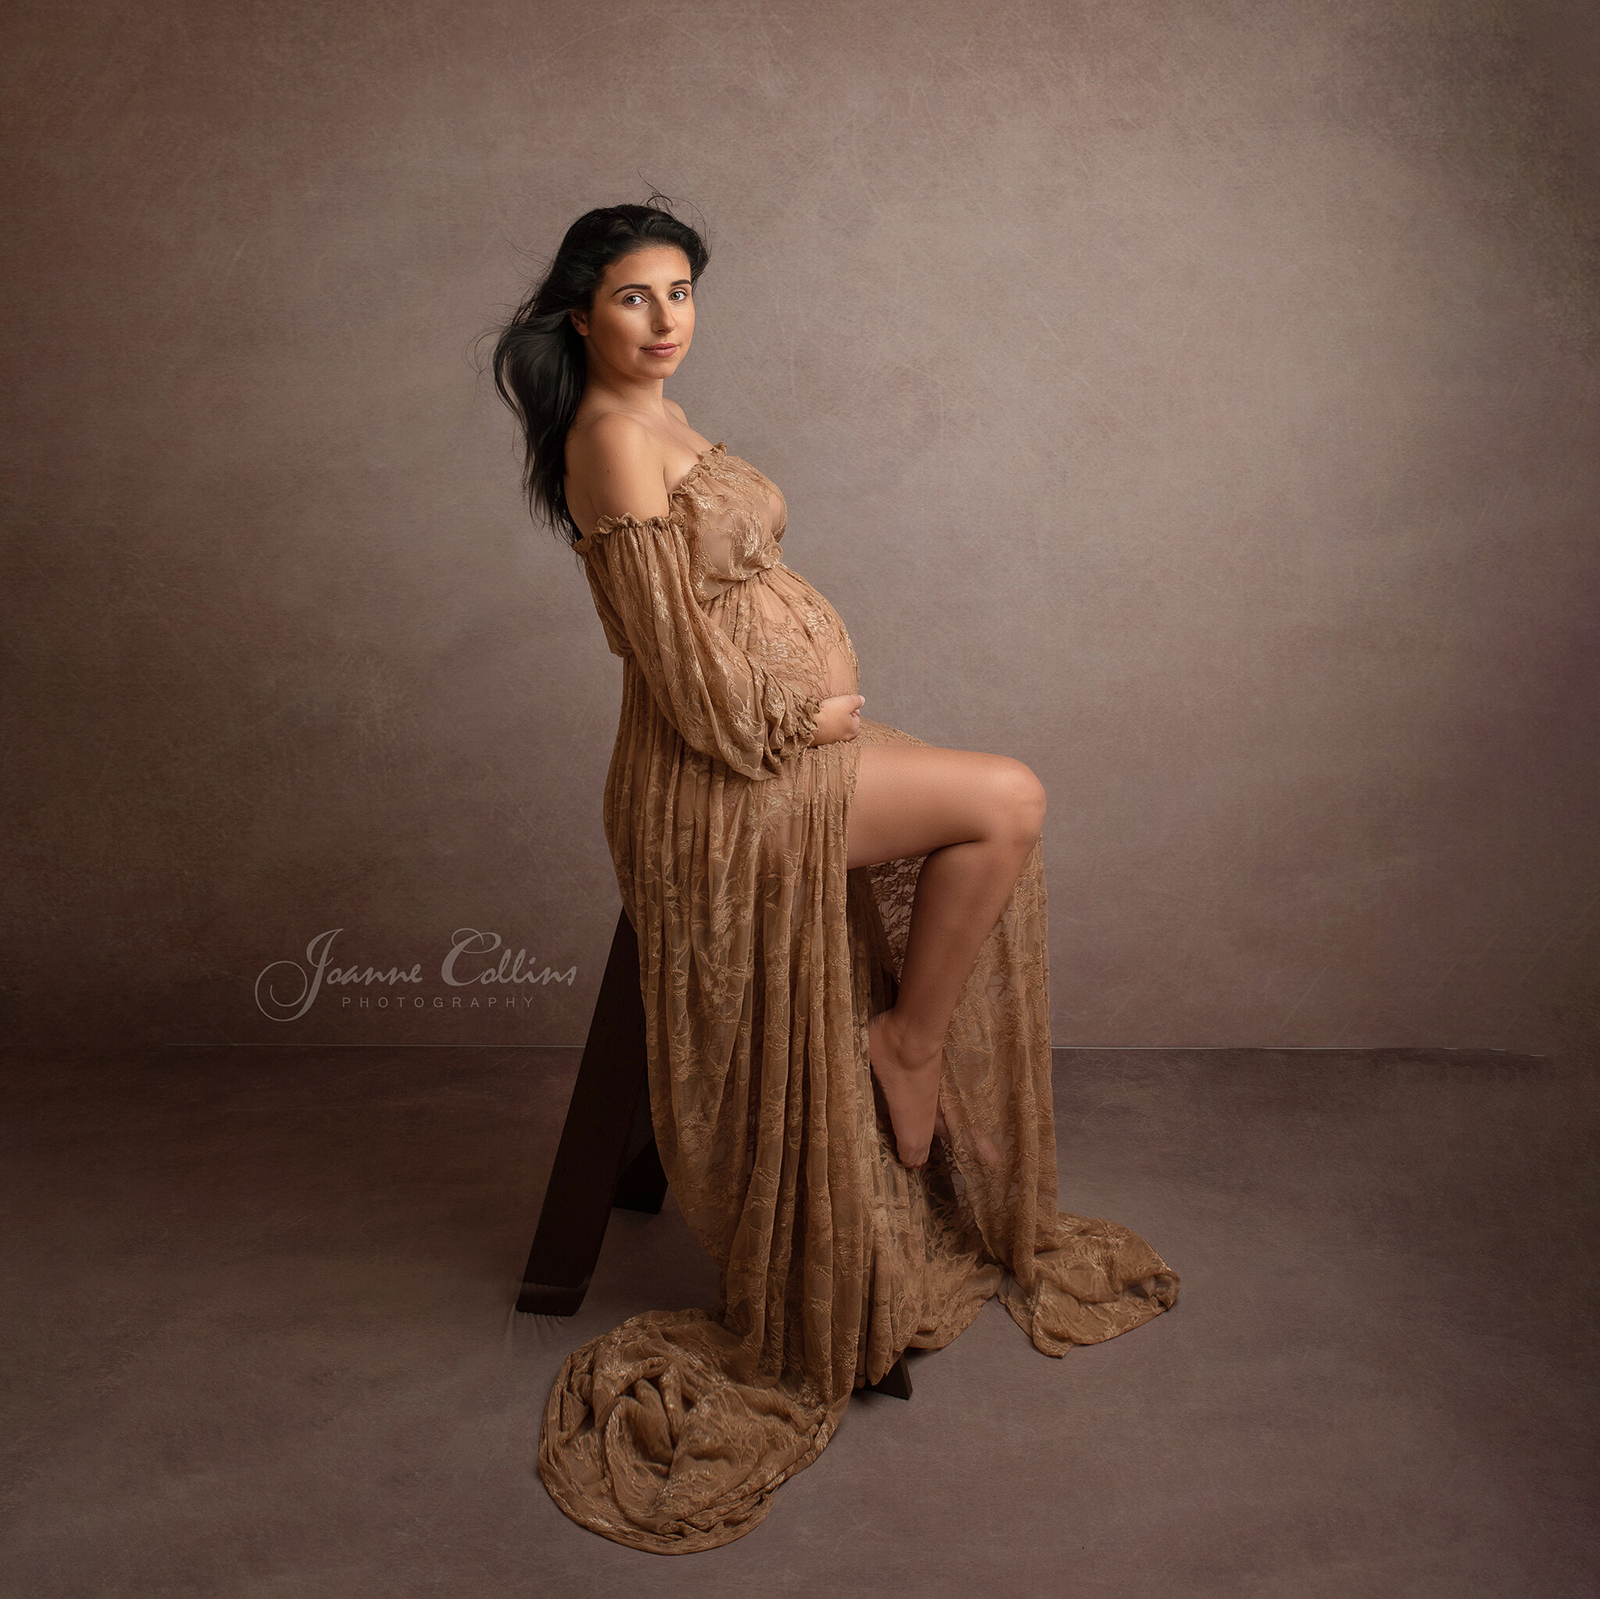 maternity photographer sittingbourne using beautiful lace maternity dress